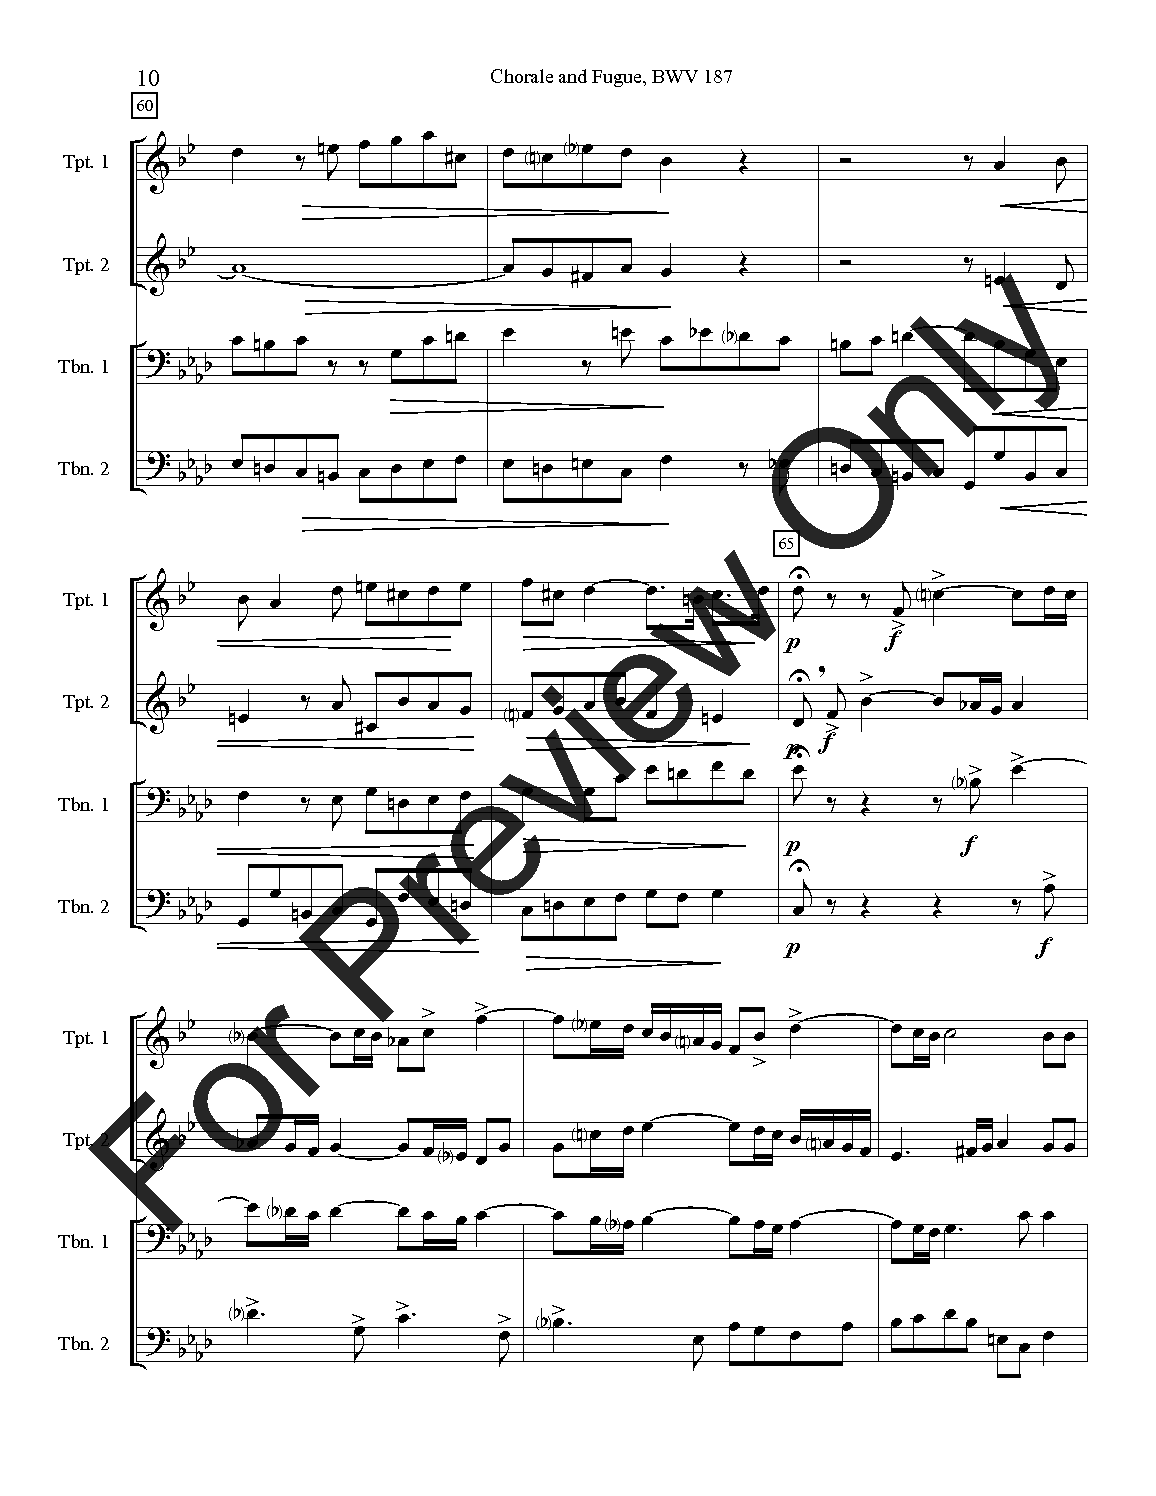 Chorale and Fugue, BWV 187 P.O.D.